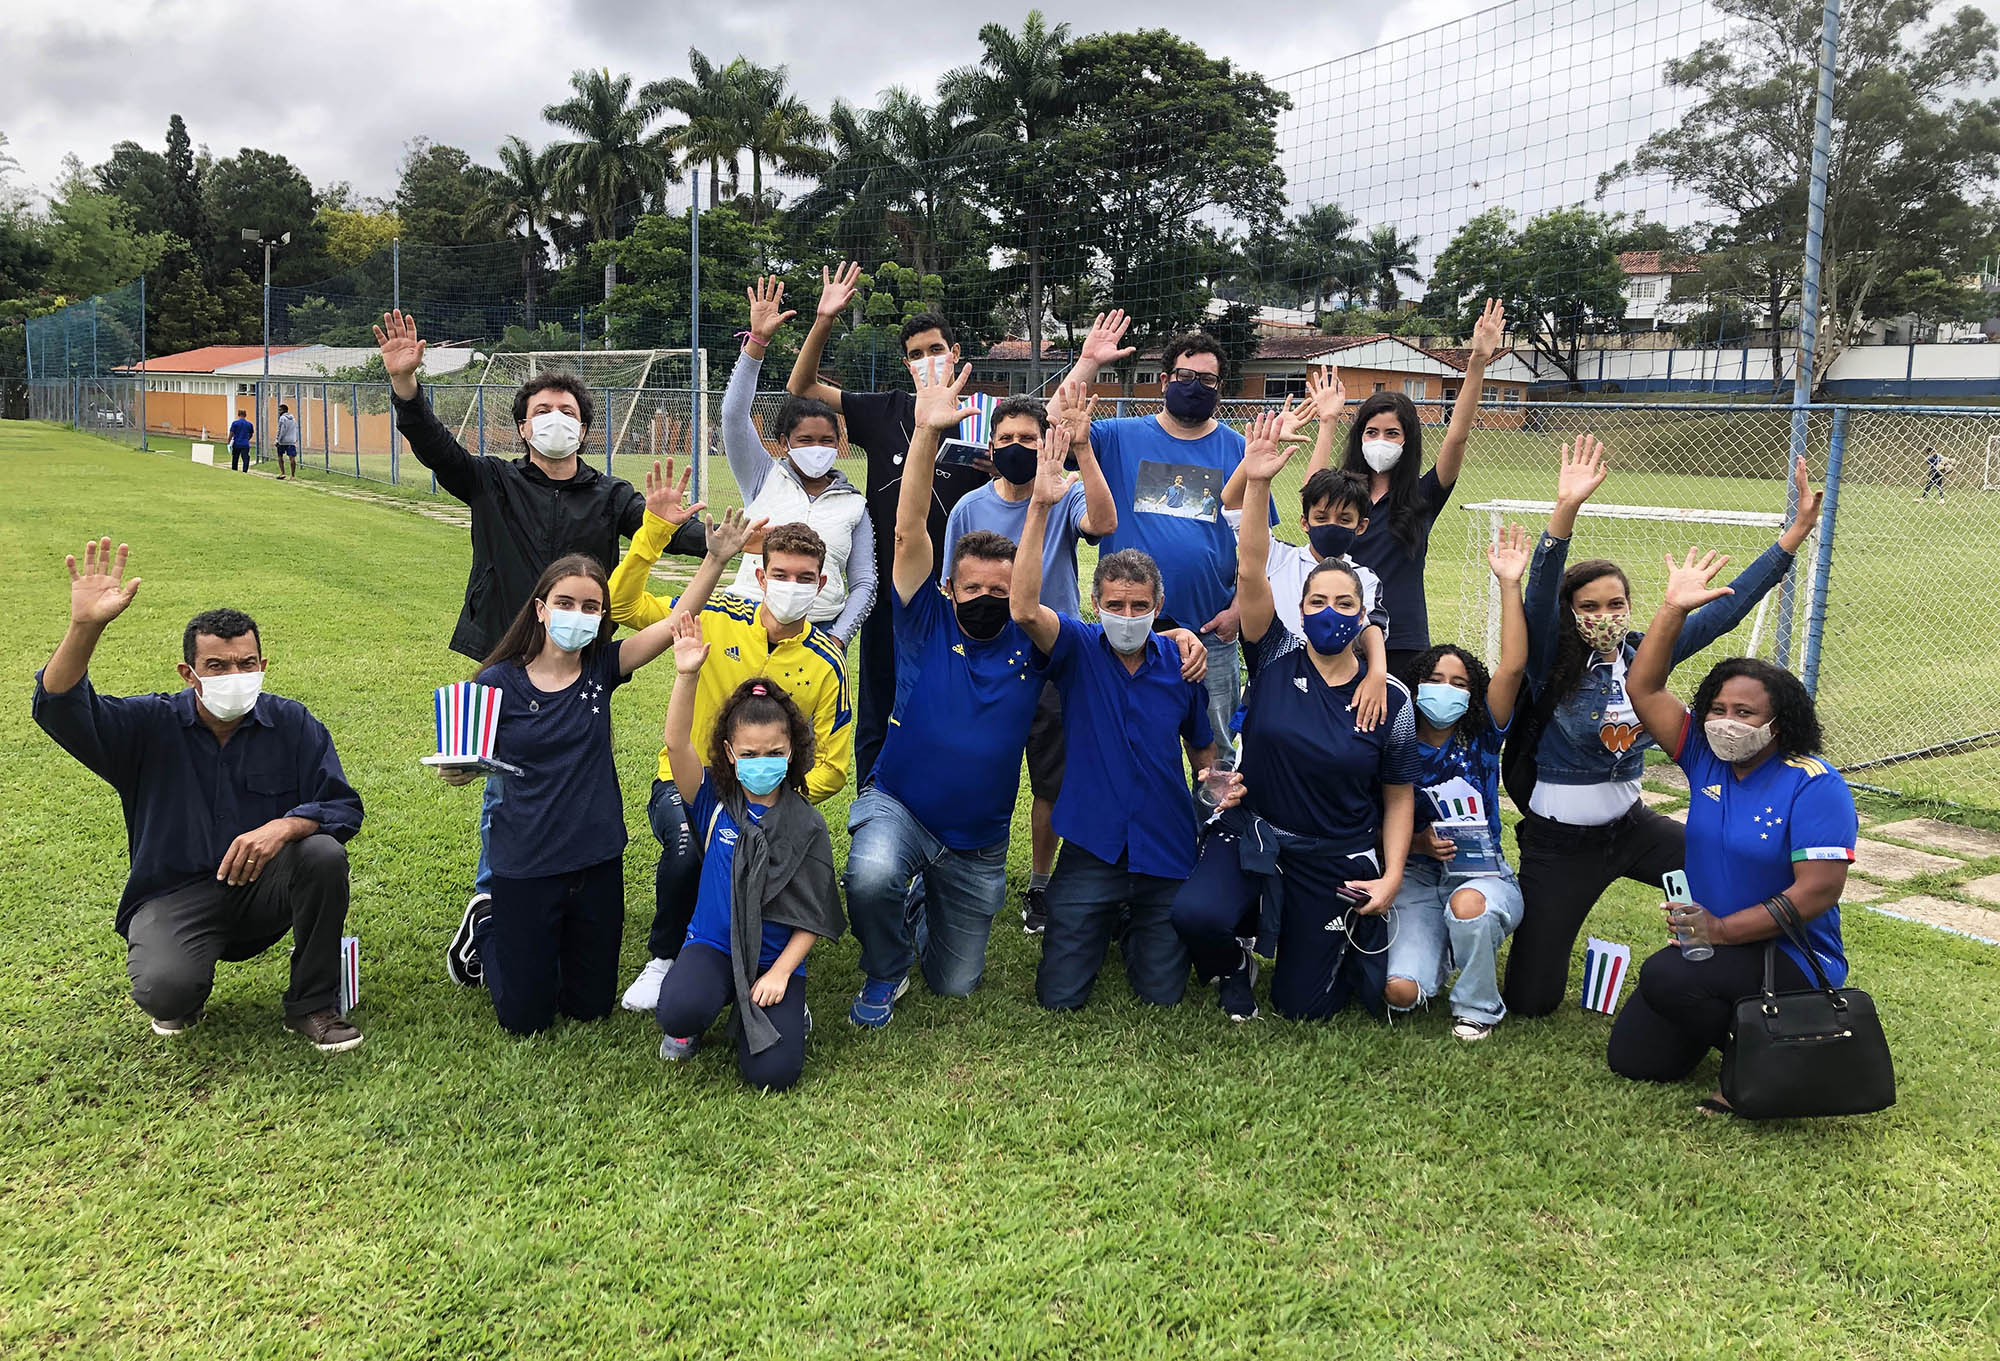 Instituto Palestra Itália leva alunos de escolas públicas para conhecer a Toca 1, em ação do projeto “Em Busca da História do Cruzeiro”